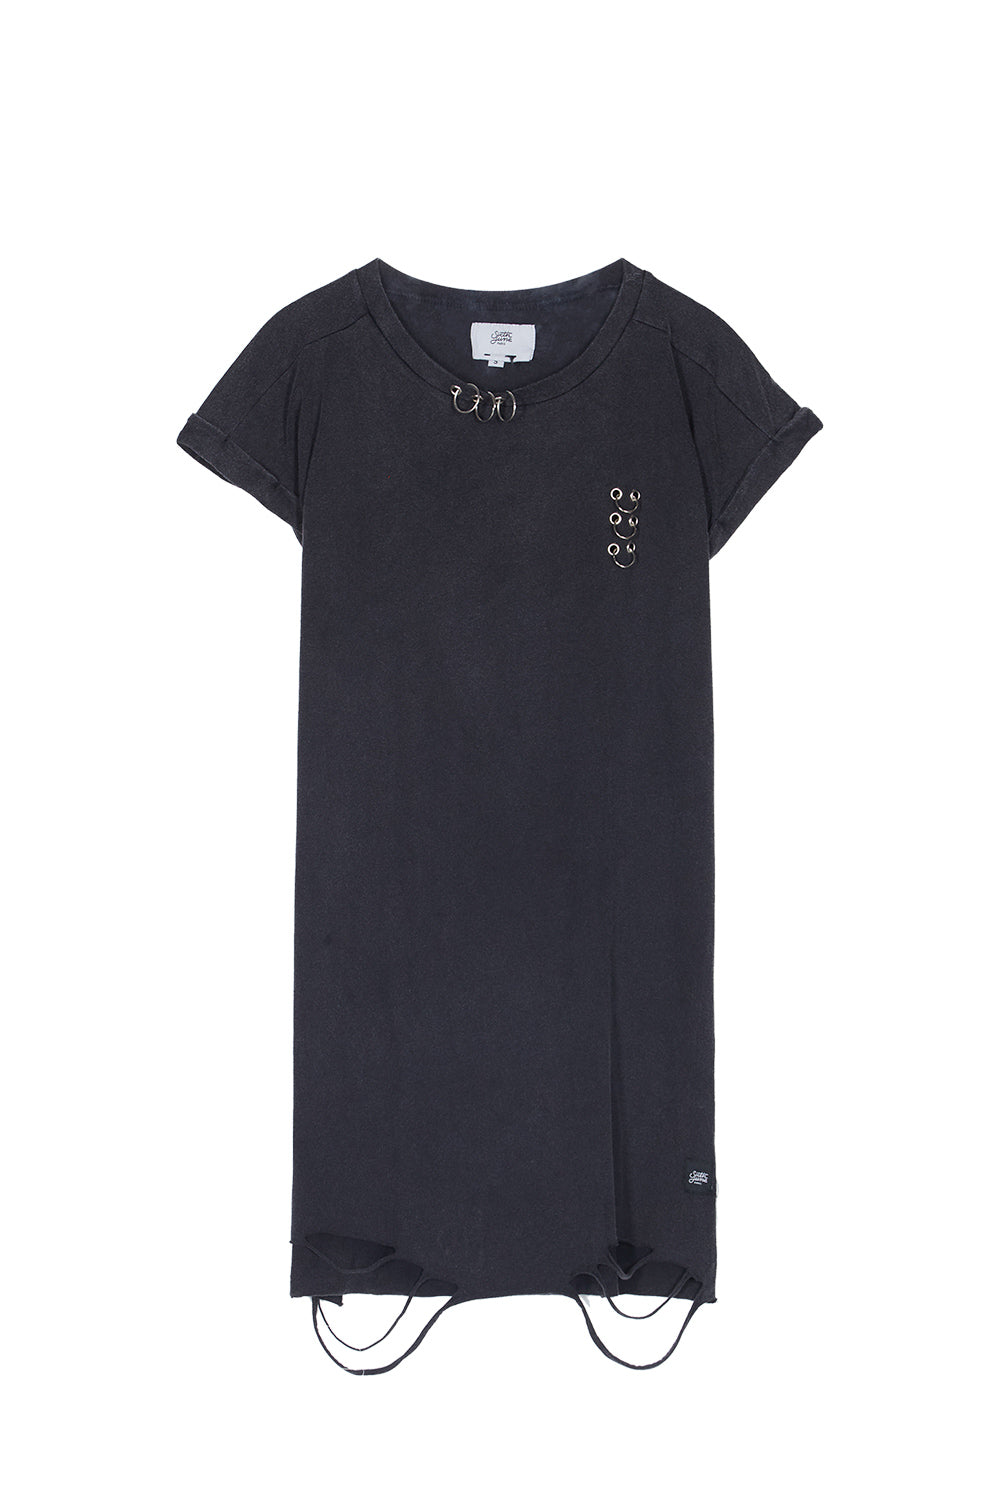 Sixth June - Robe t-shirt anneaux destroy noir